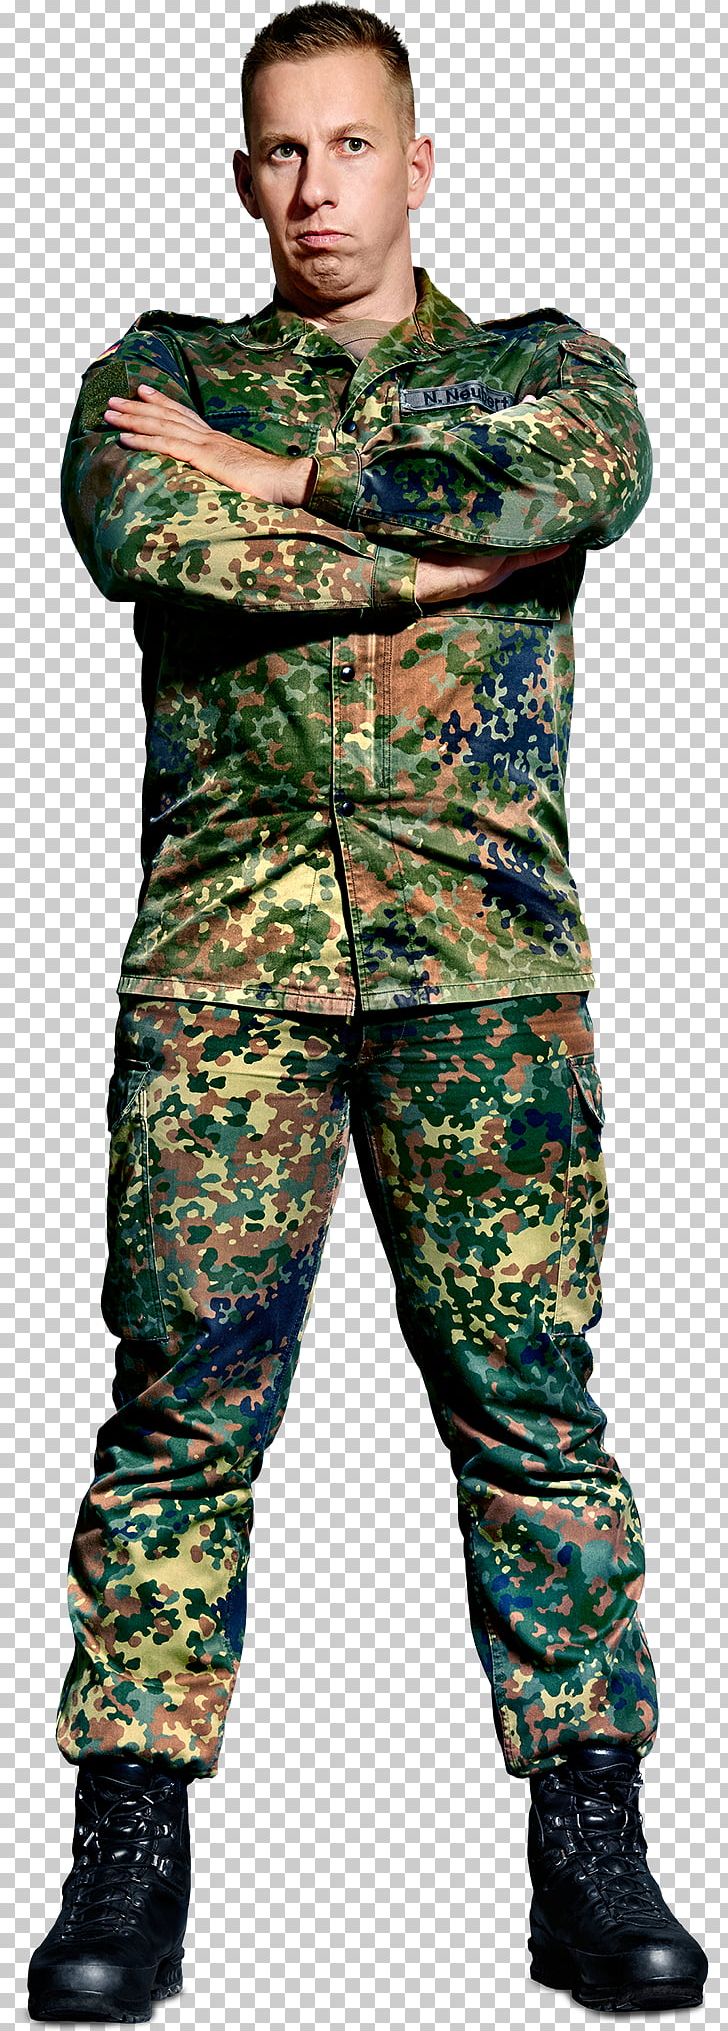 Die Rekruten Military Soldier Bundeswehr Stabsgefreiter PNG, Clipart, Alter, Army, Ausbilder, Bundeswehr, Camouflage Free PNG Download